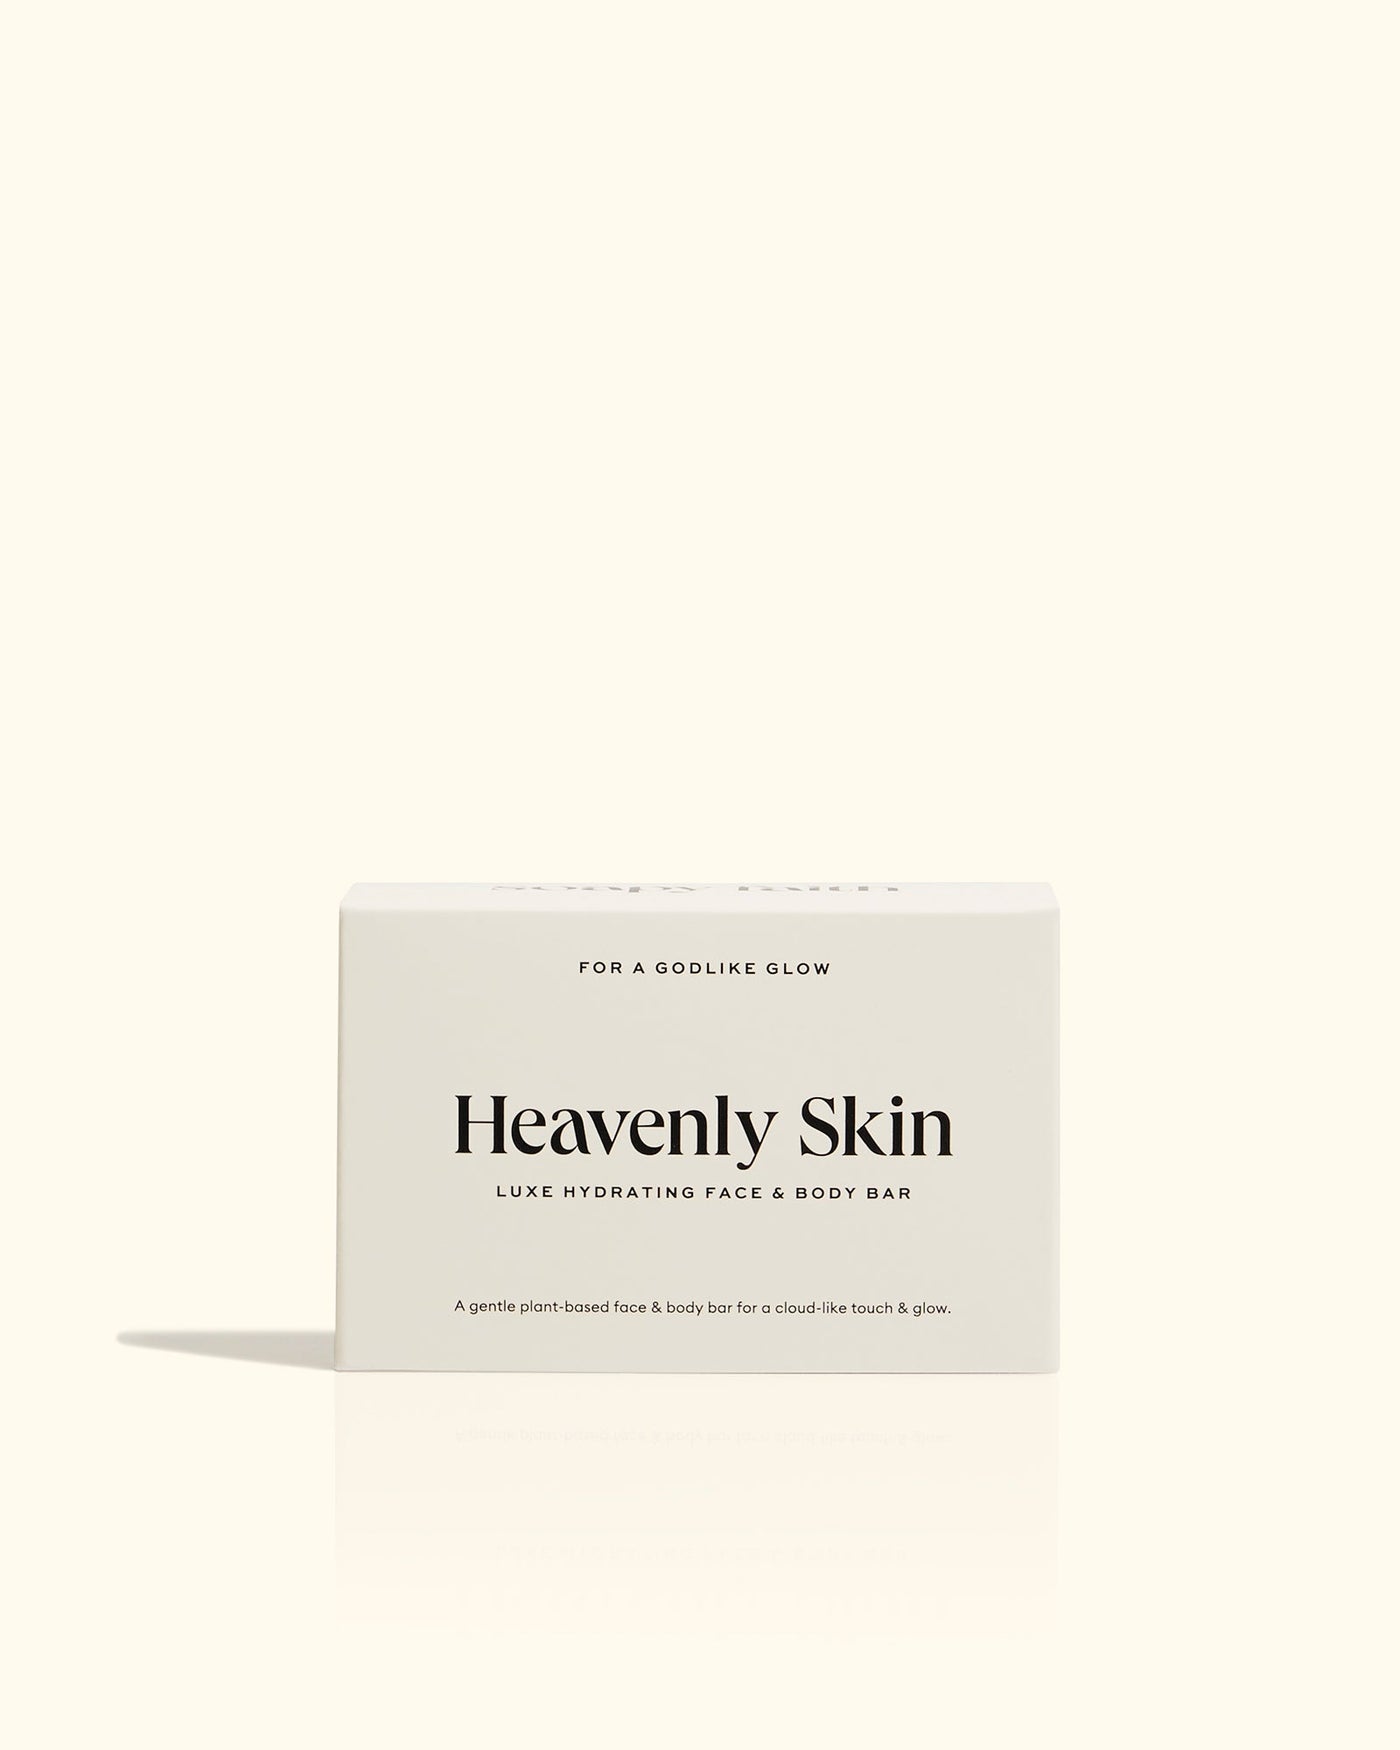 Heavenly Skin Face & Body Bar